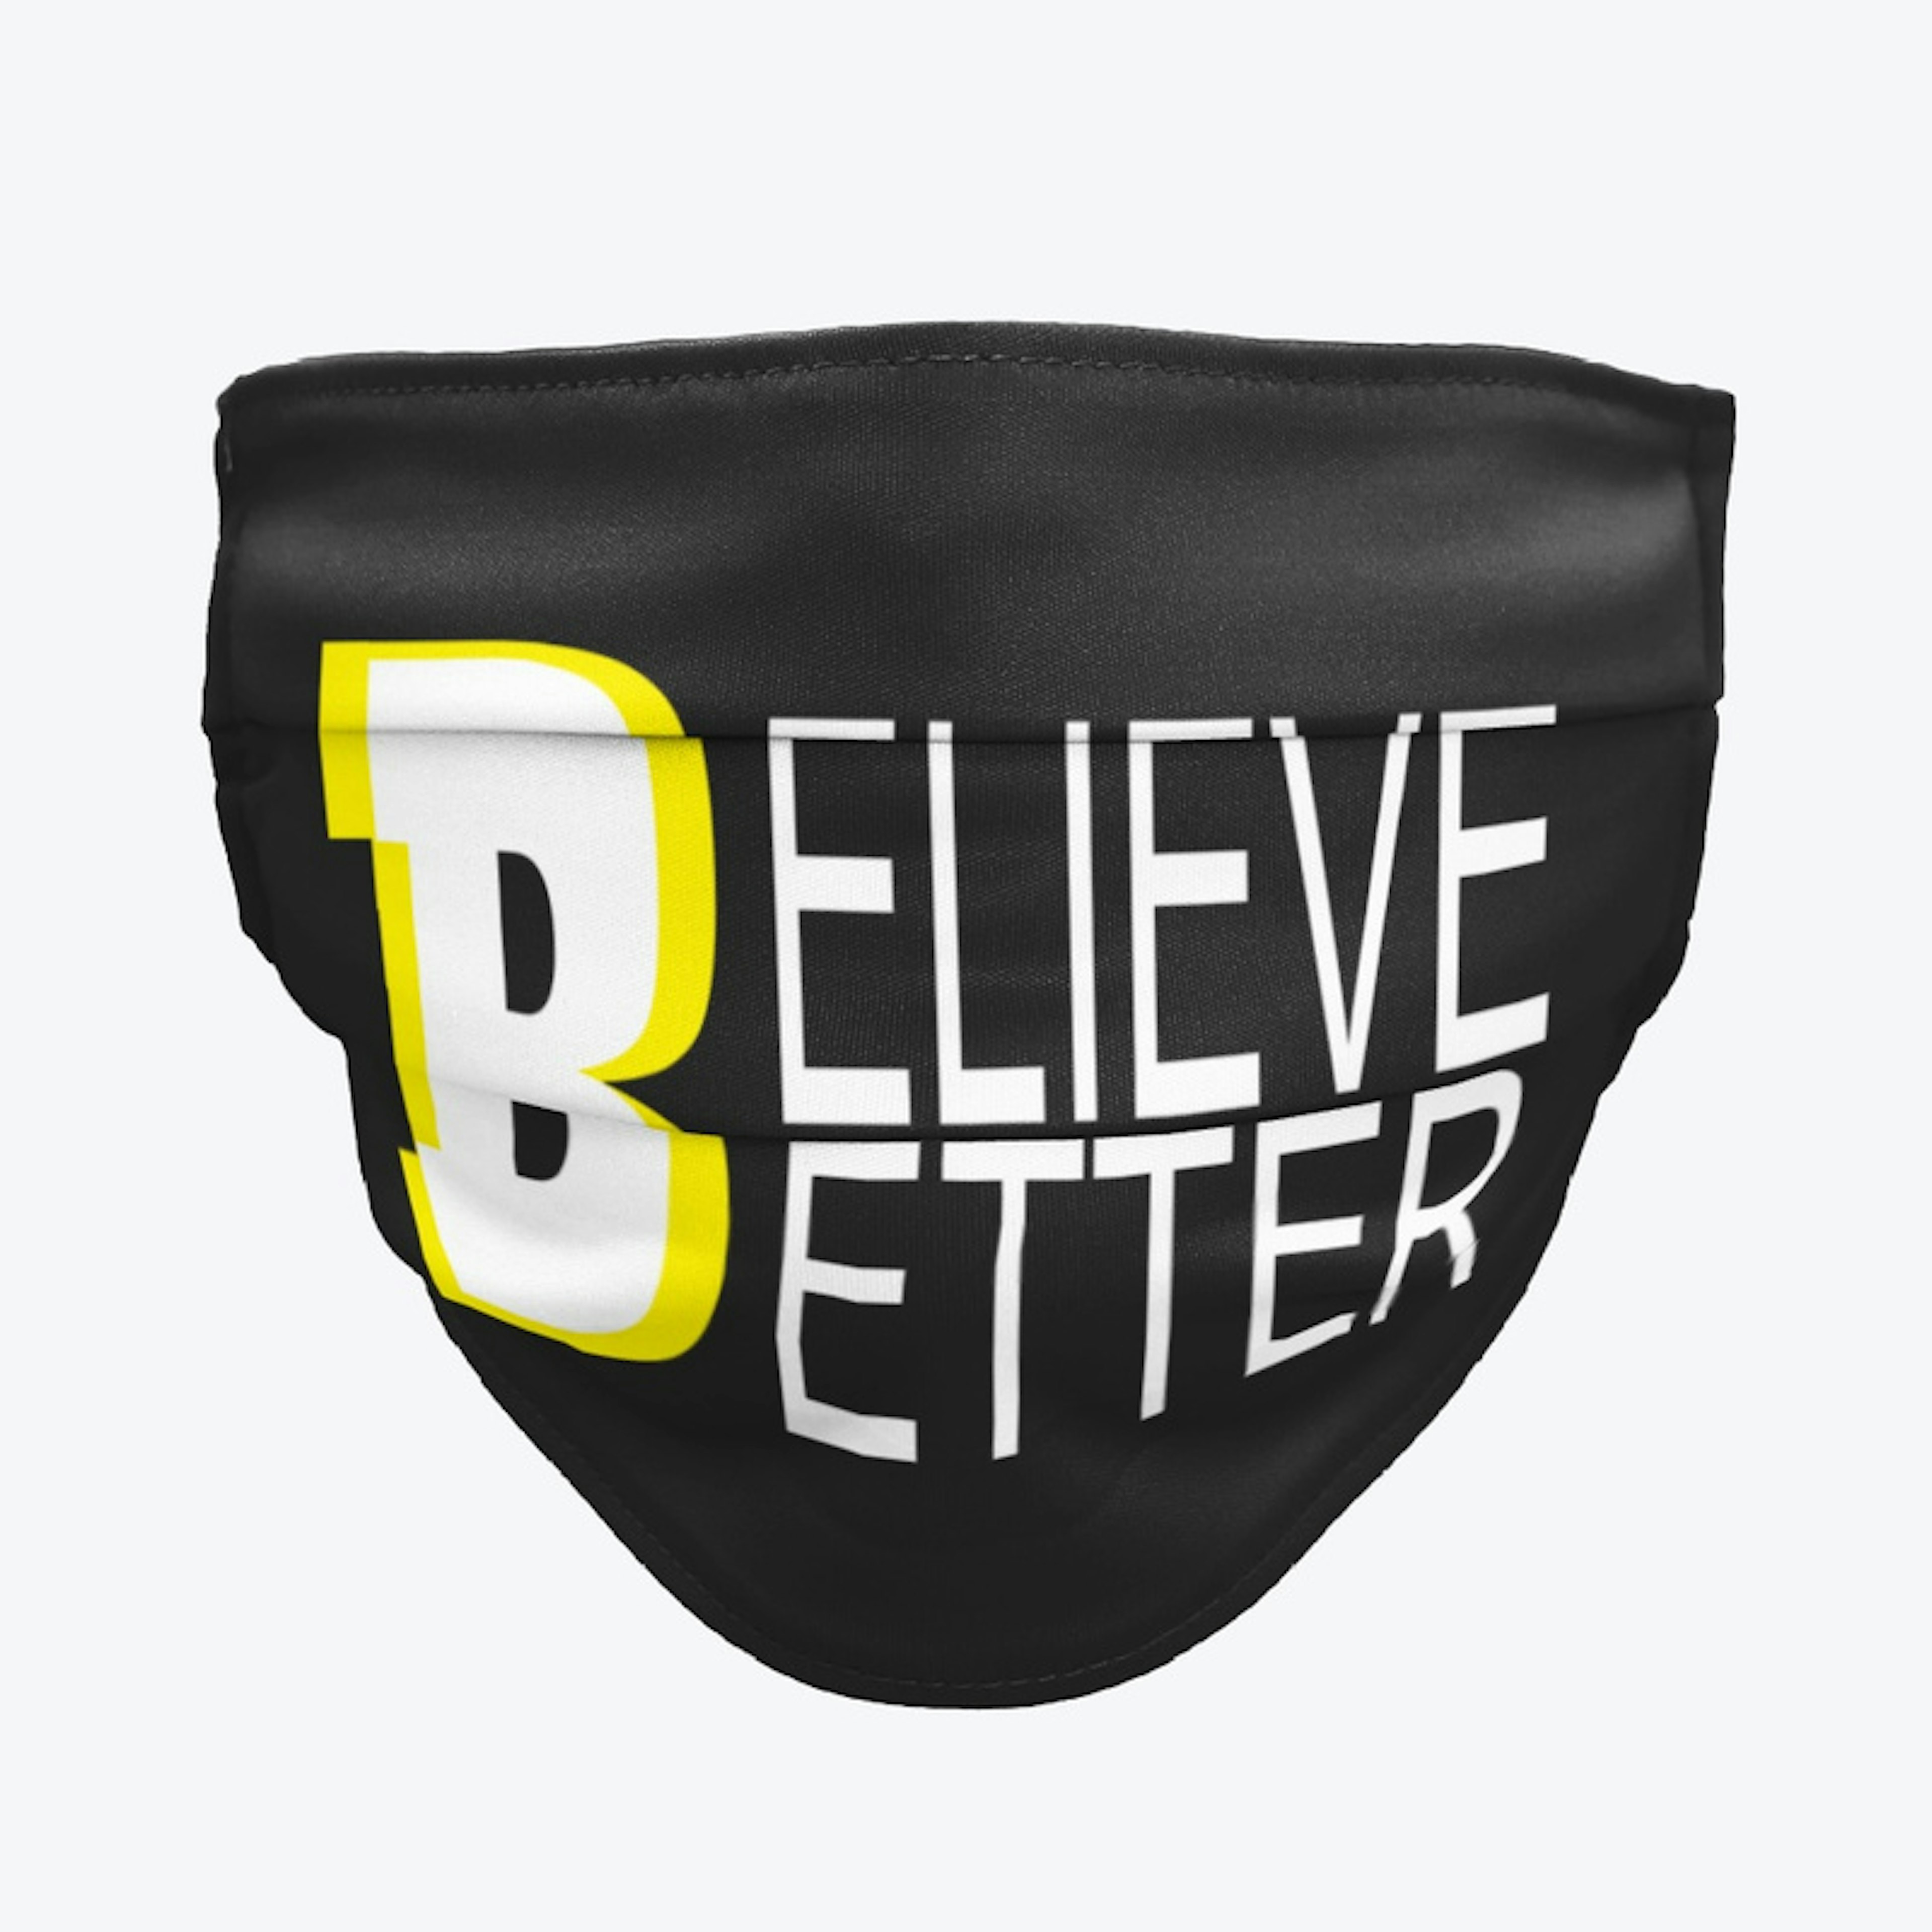 Believe Better